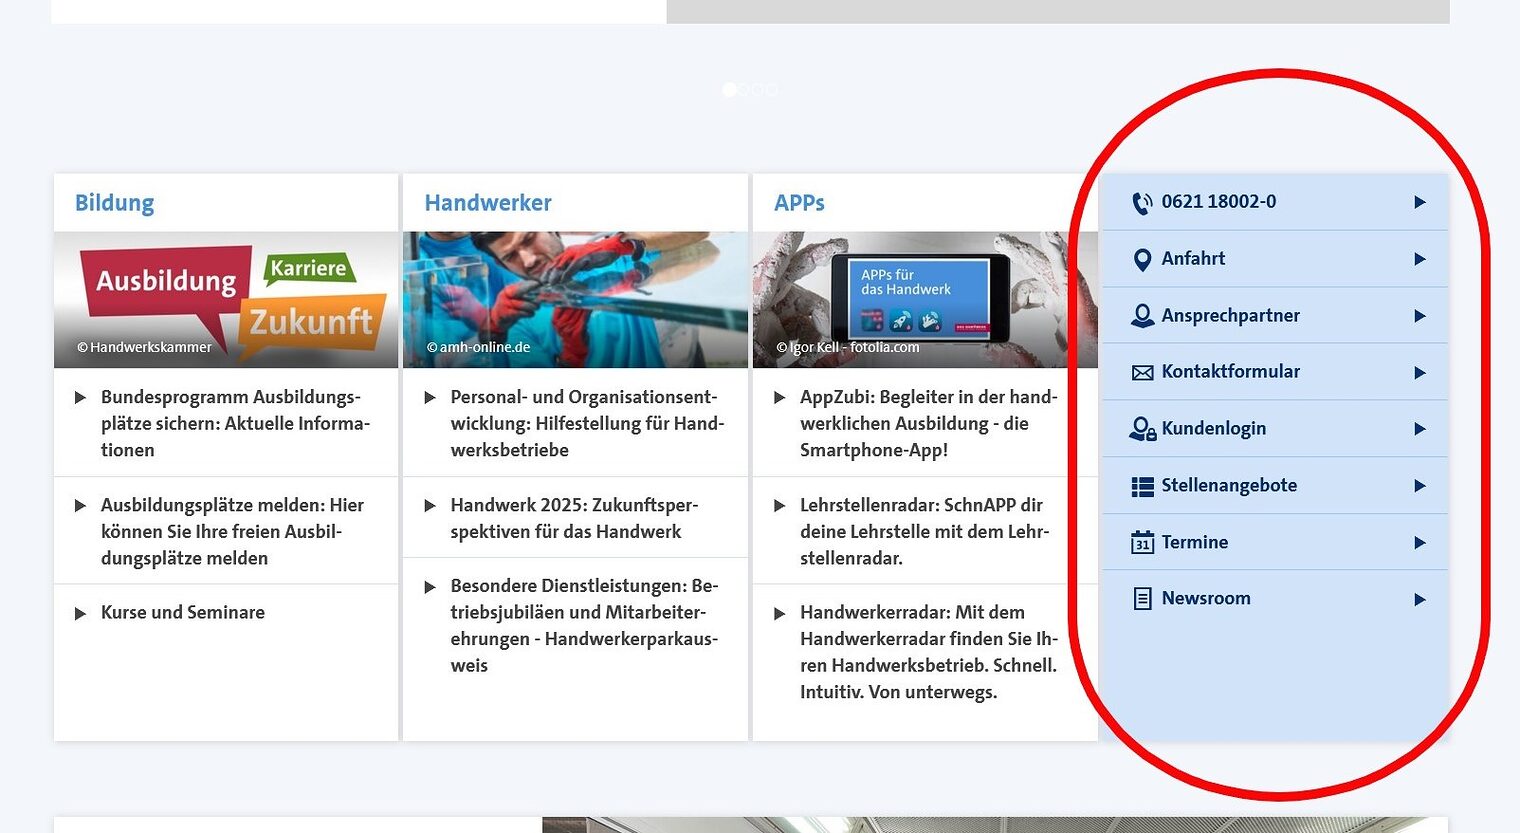 Startseite von www.hwk-mannheim.de mit Info-Menü am rechten Seitenrand mit Links zu Kontaktinformationen, Stellenangeboten, Terminen, News